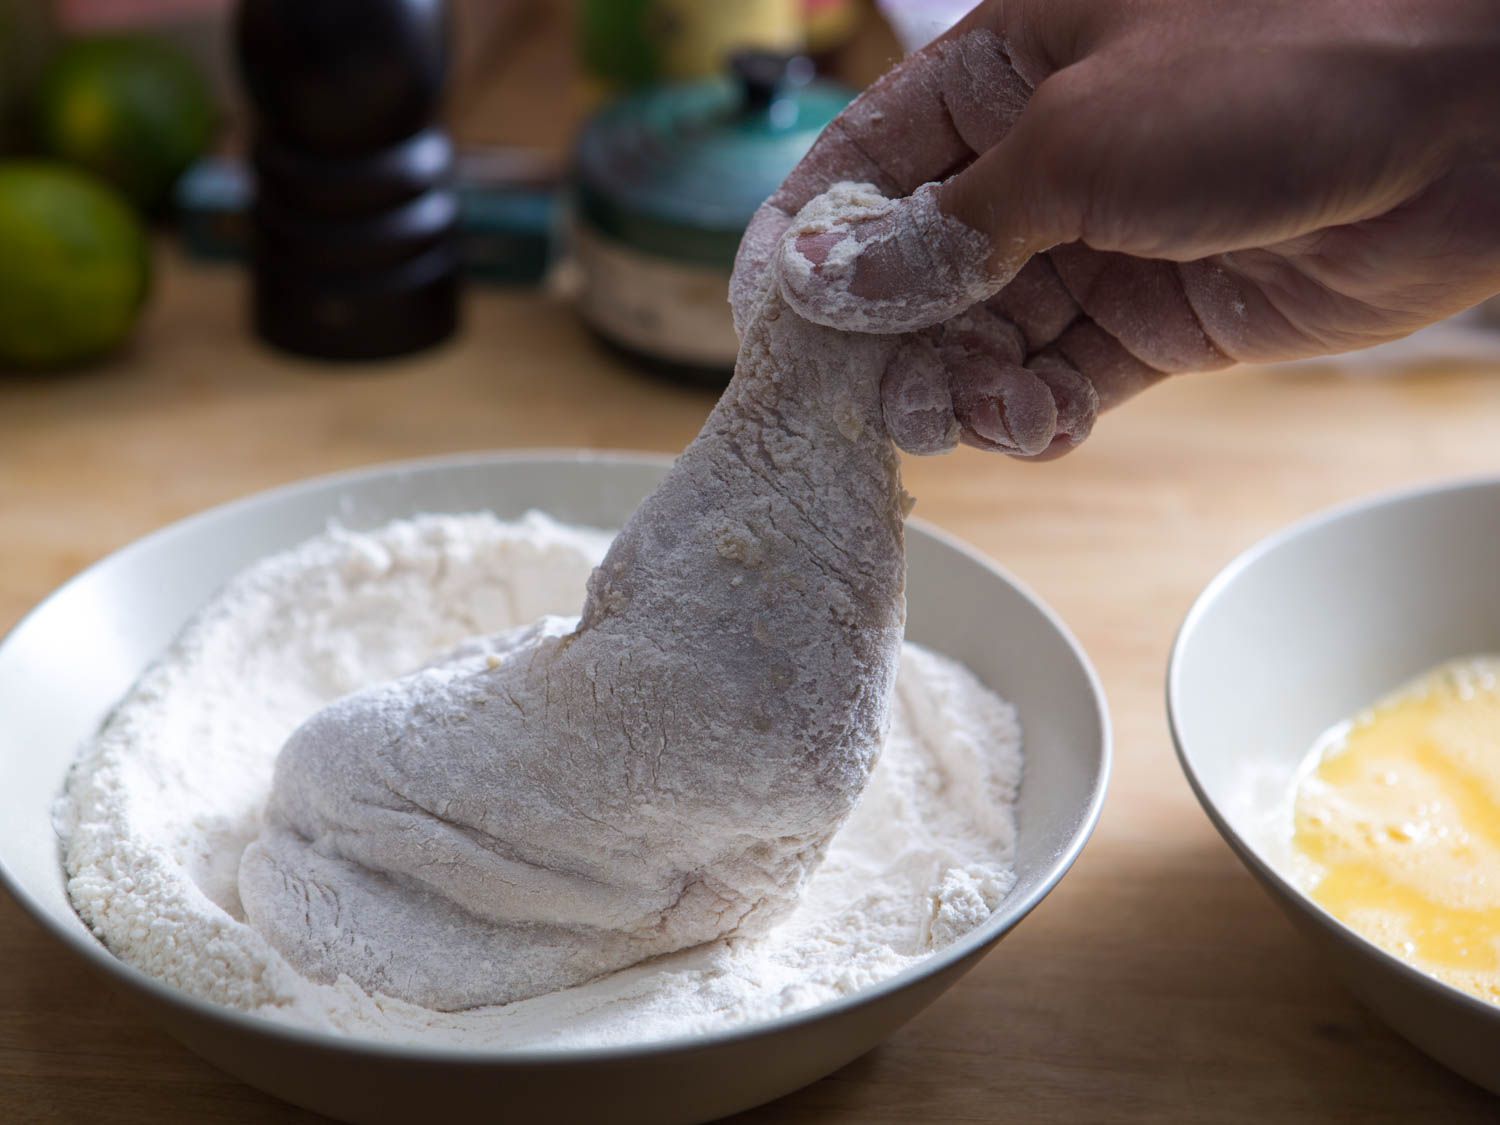 Dredging chicken leg in bowl of flour